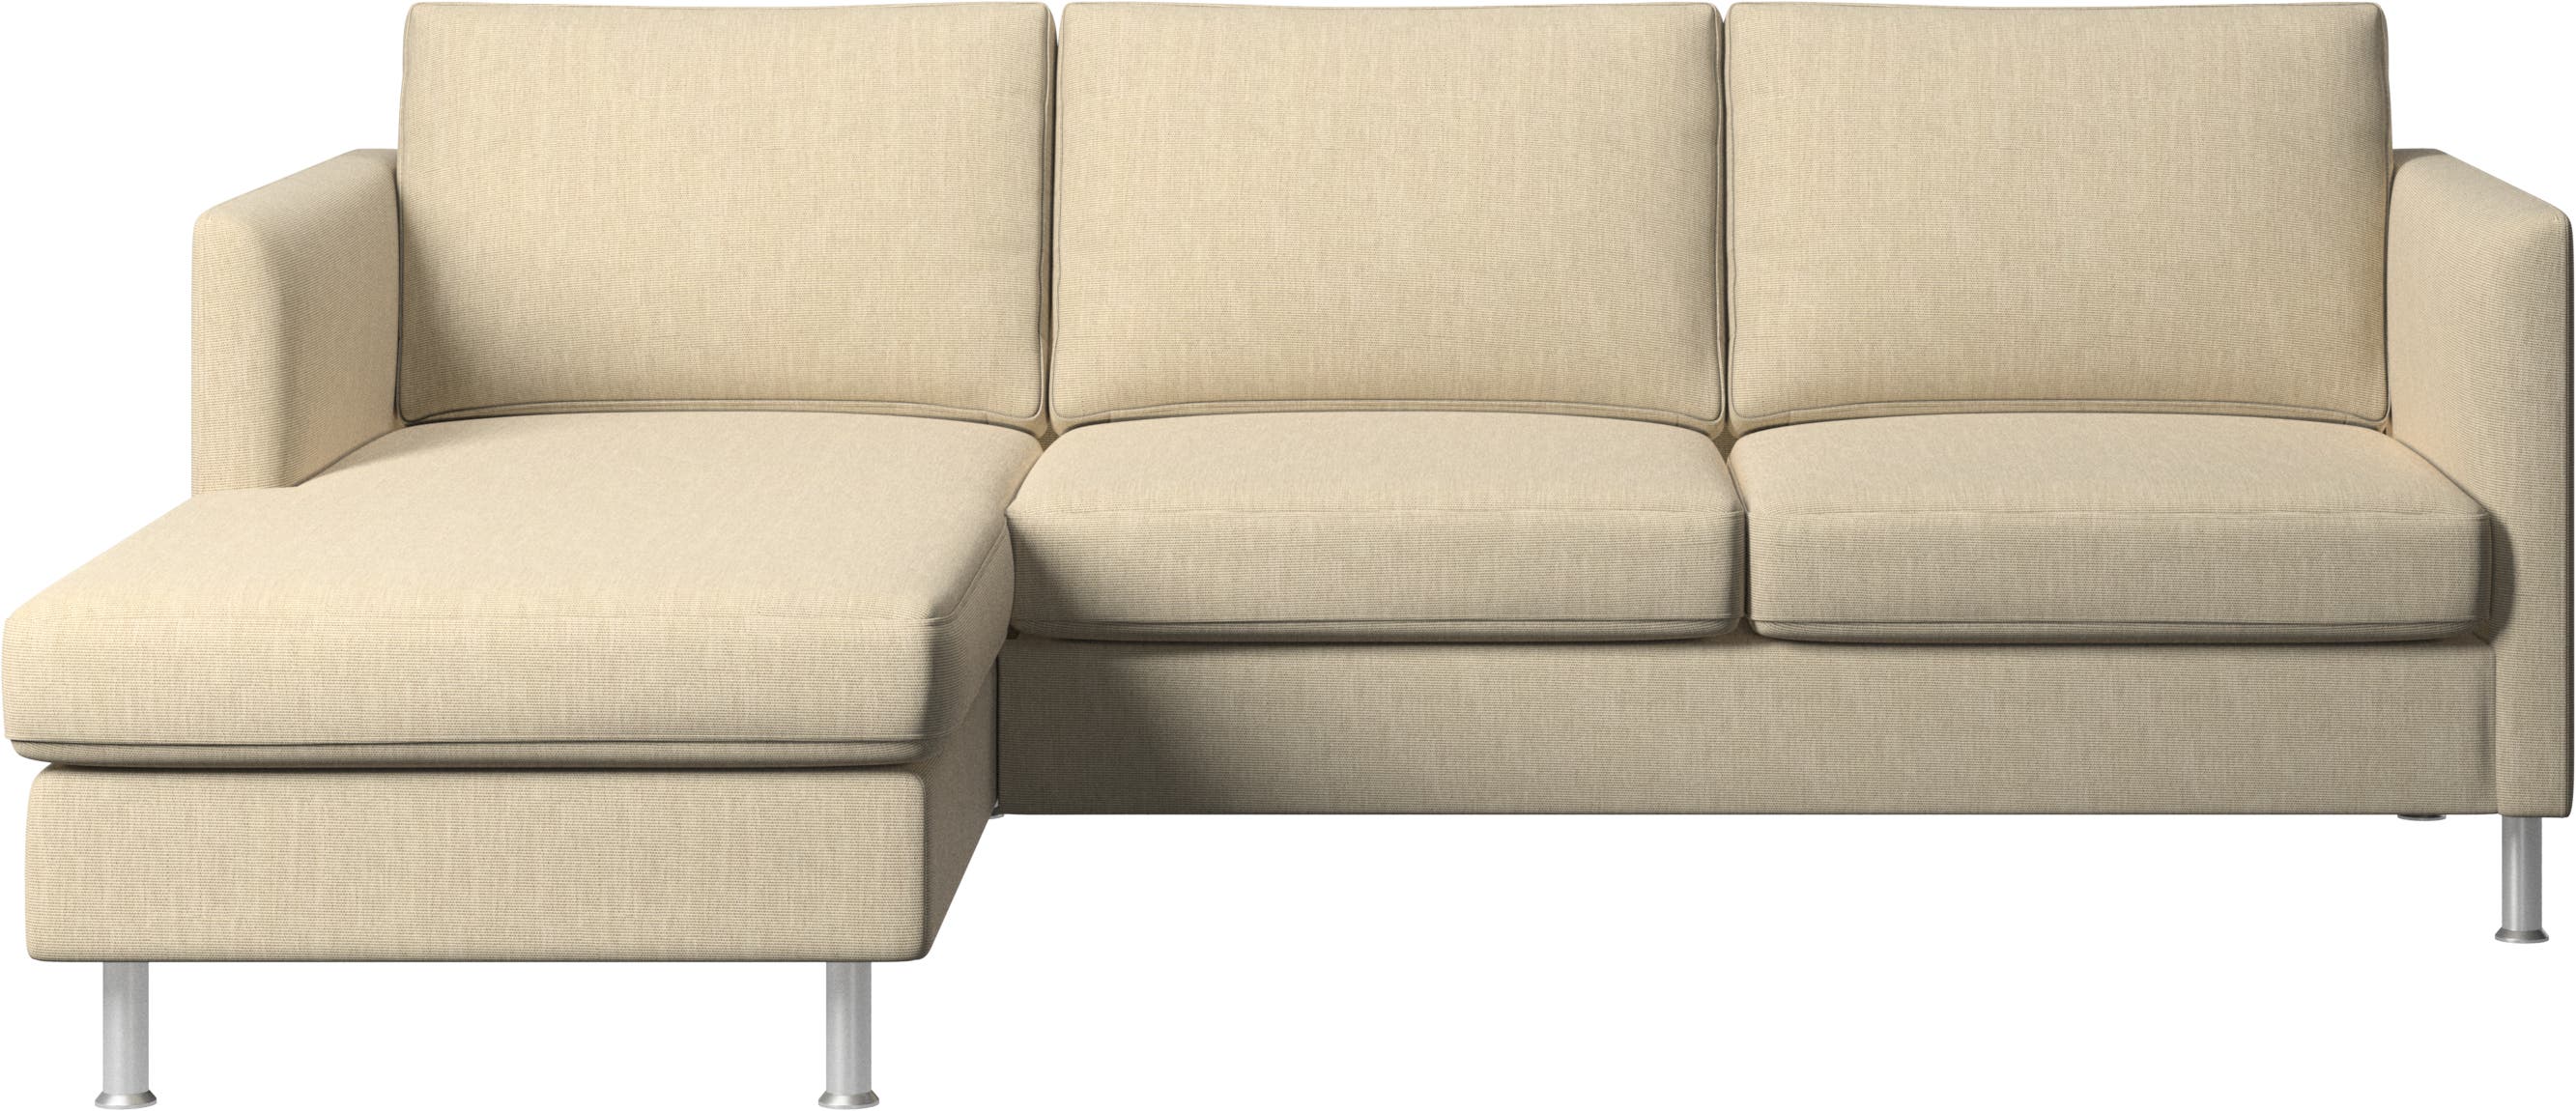 Indivi-sohva, sisältää lepomoduulin